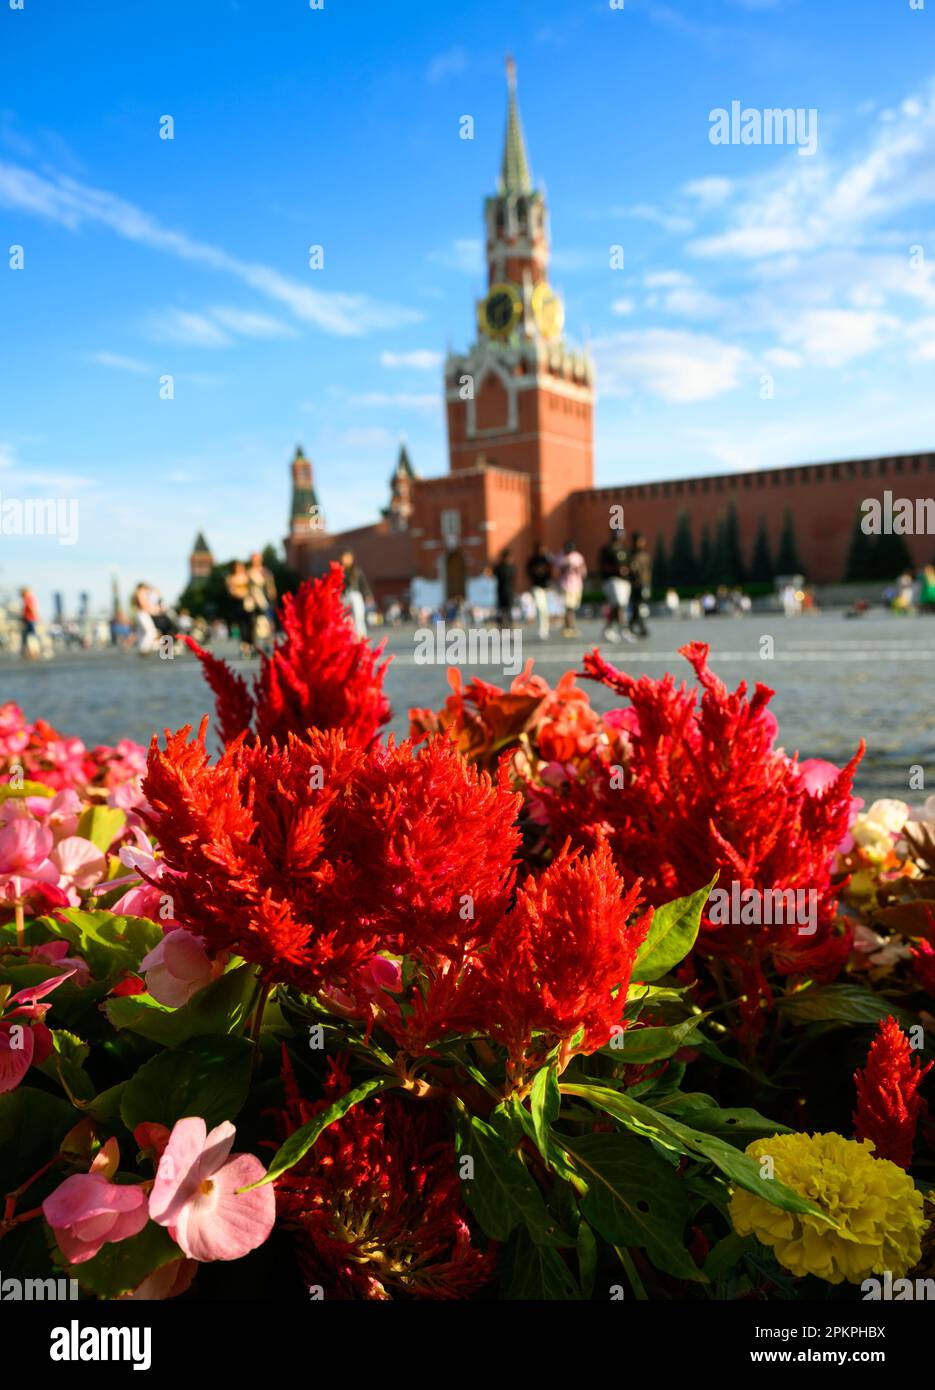 Fleurs sur la place Rouge en été, Moscou, Russie. Le célèbre Kremlin de Moscou sous ciel bleu en arrière-plan. Cet endroit est une attraction touristique de Moscou. Thème Banque D'Images